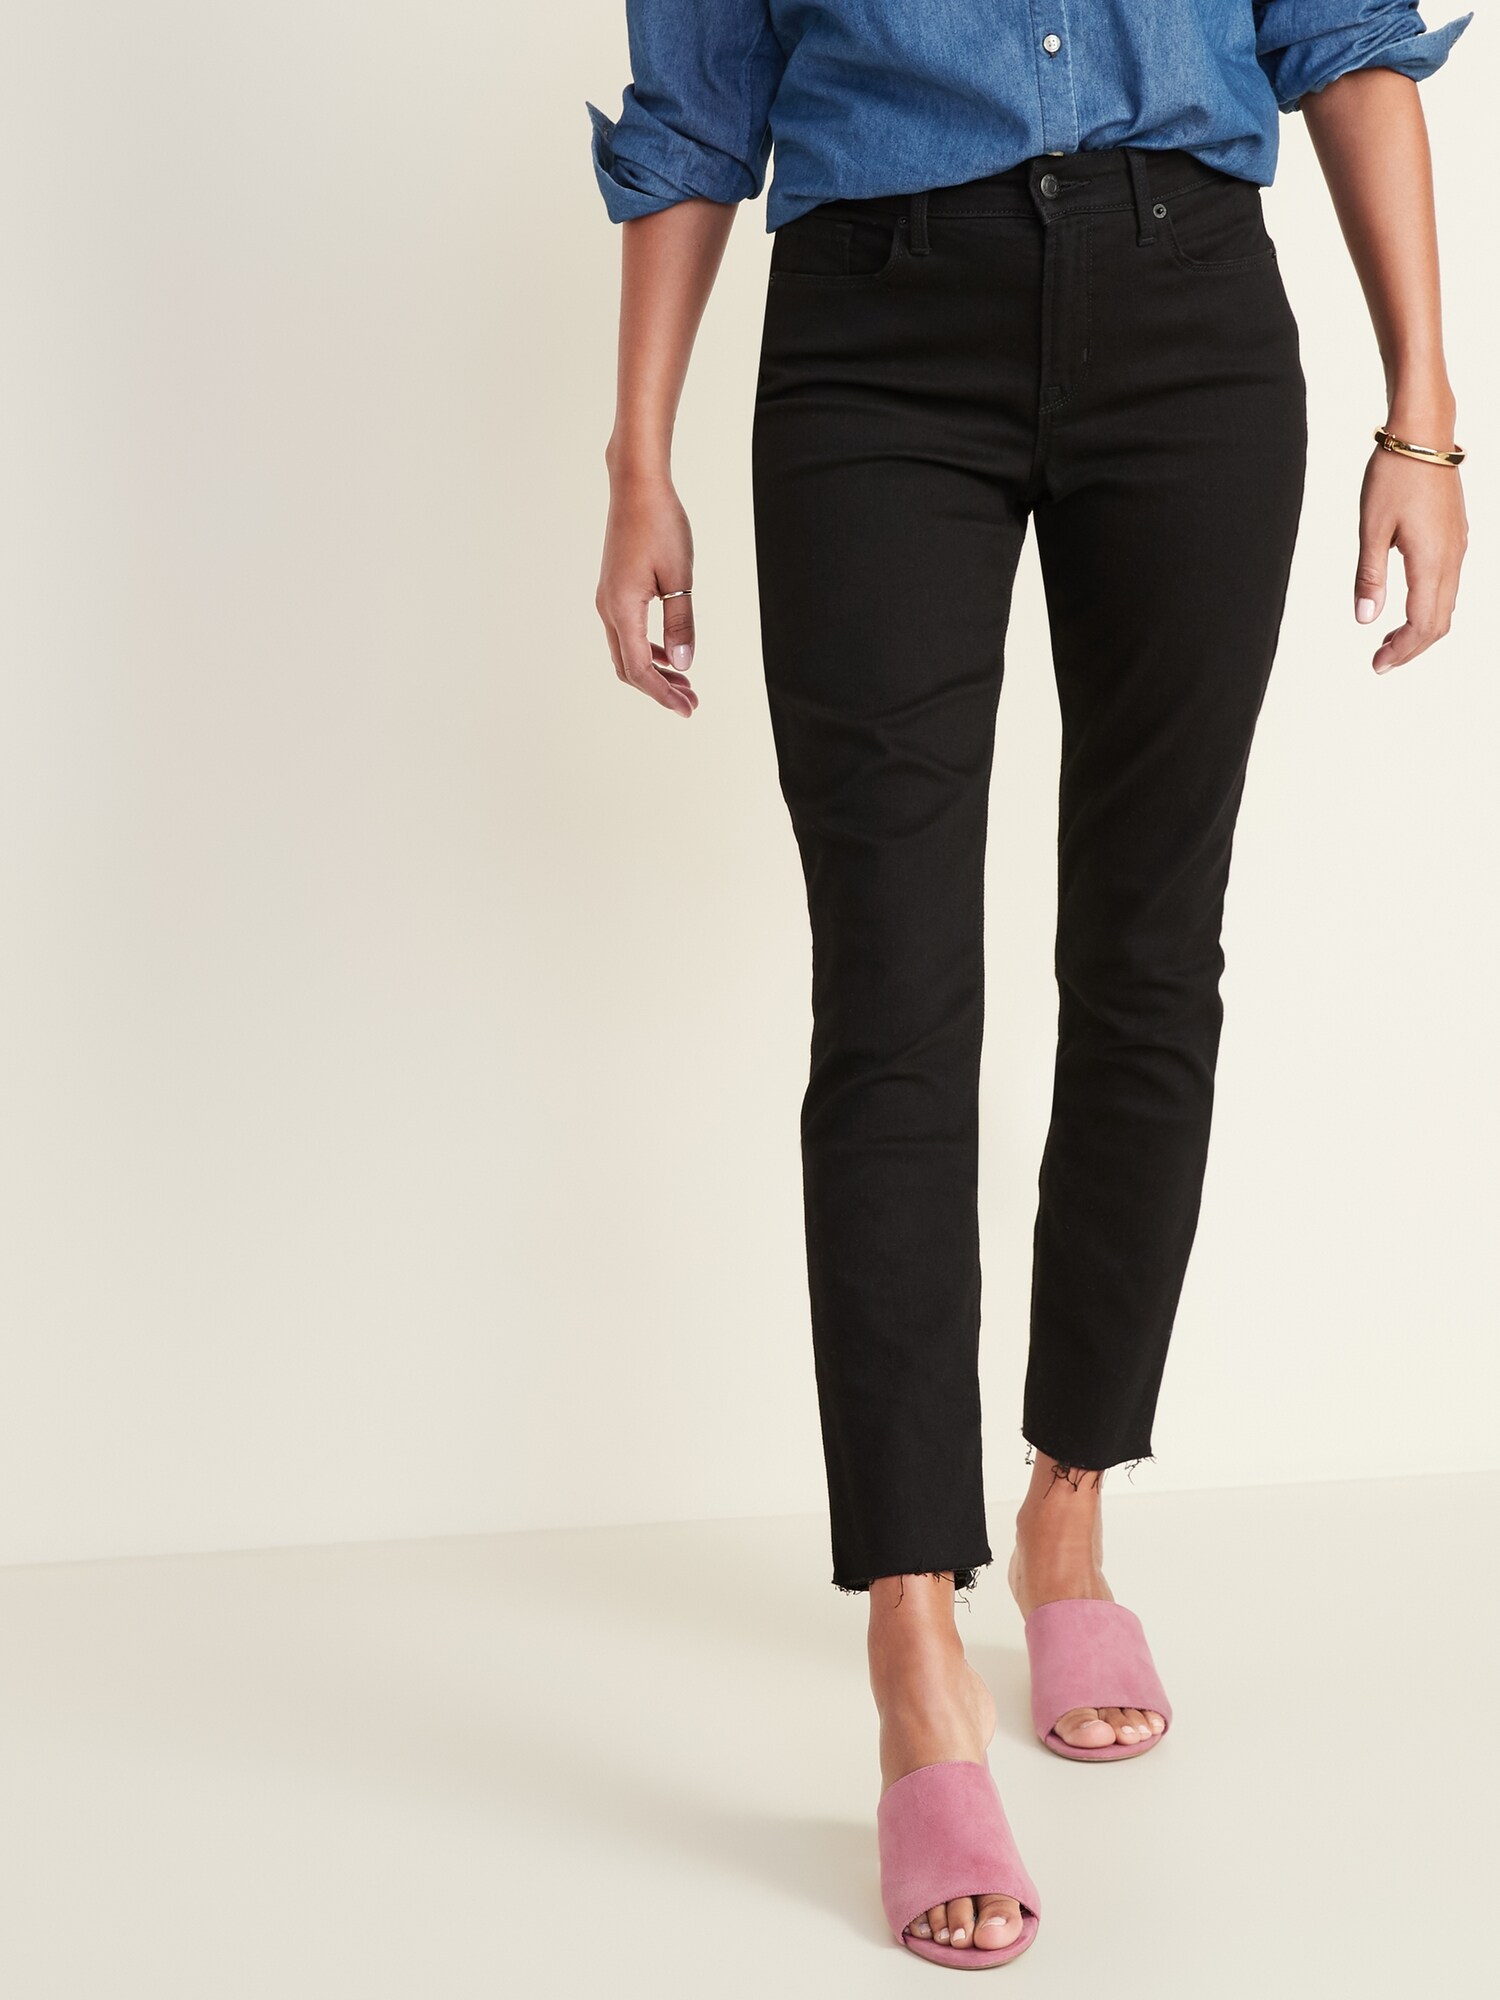 high waist slim leg women's jeans